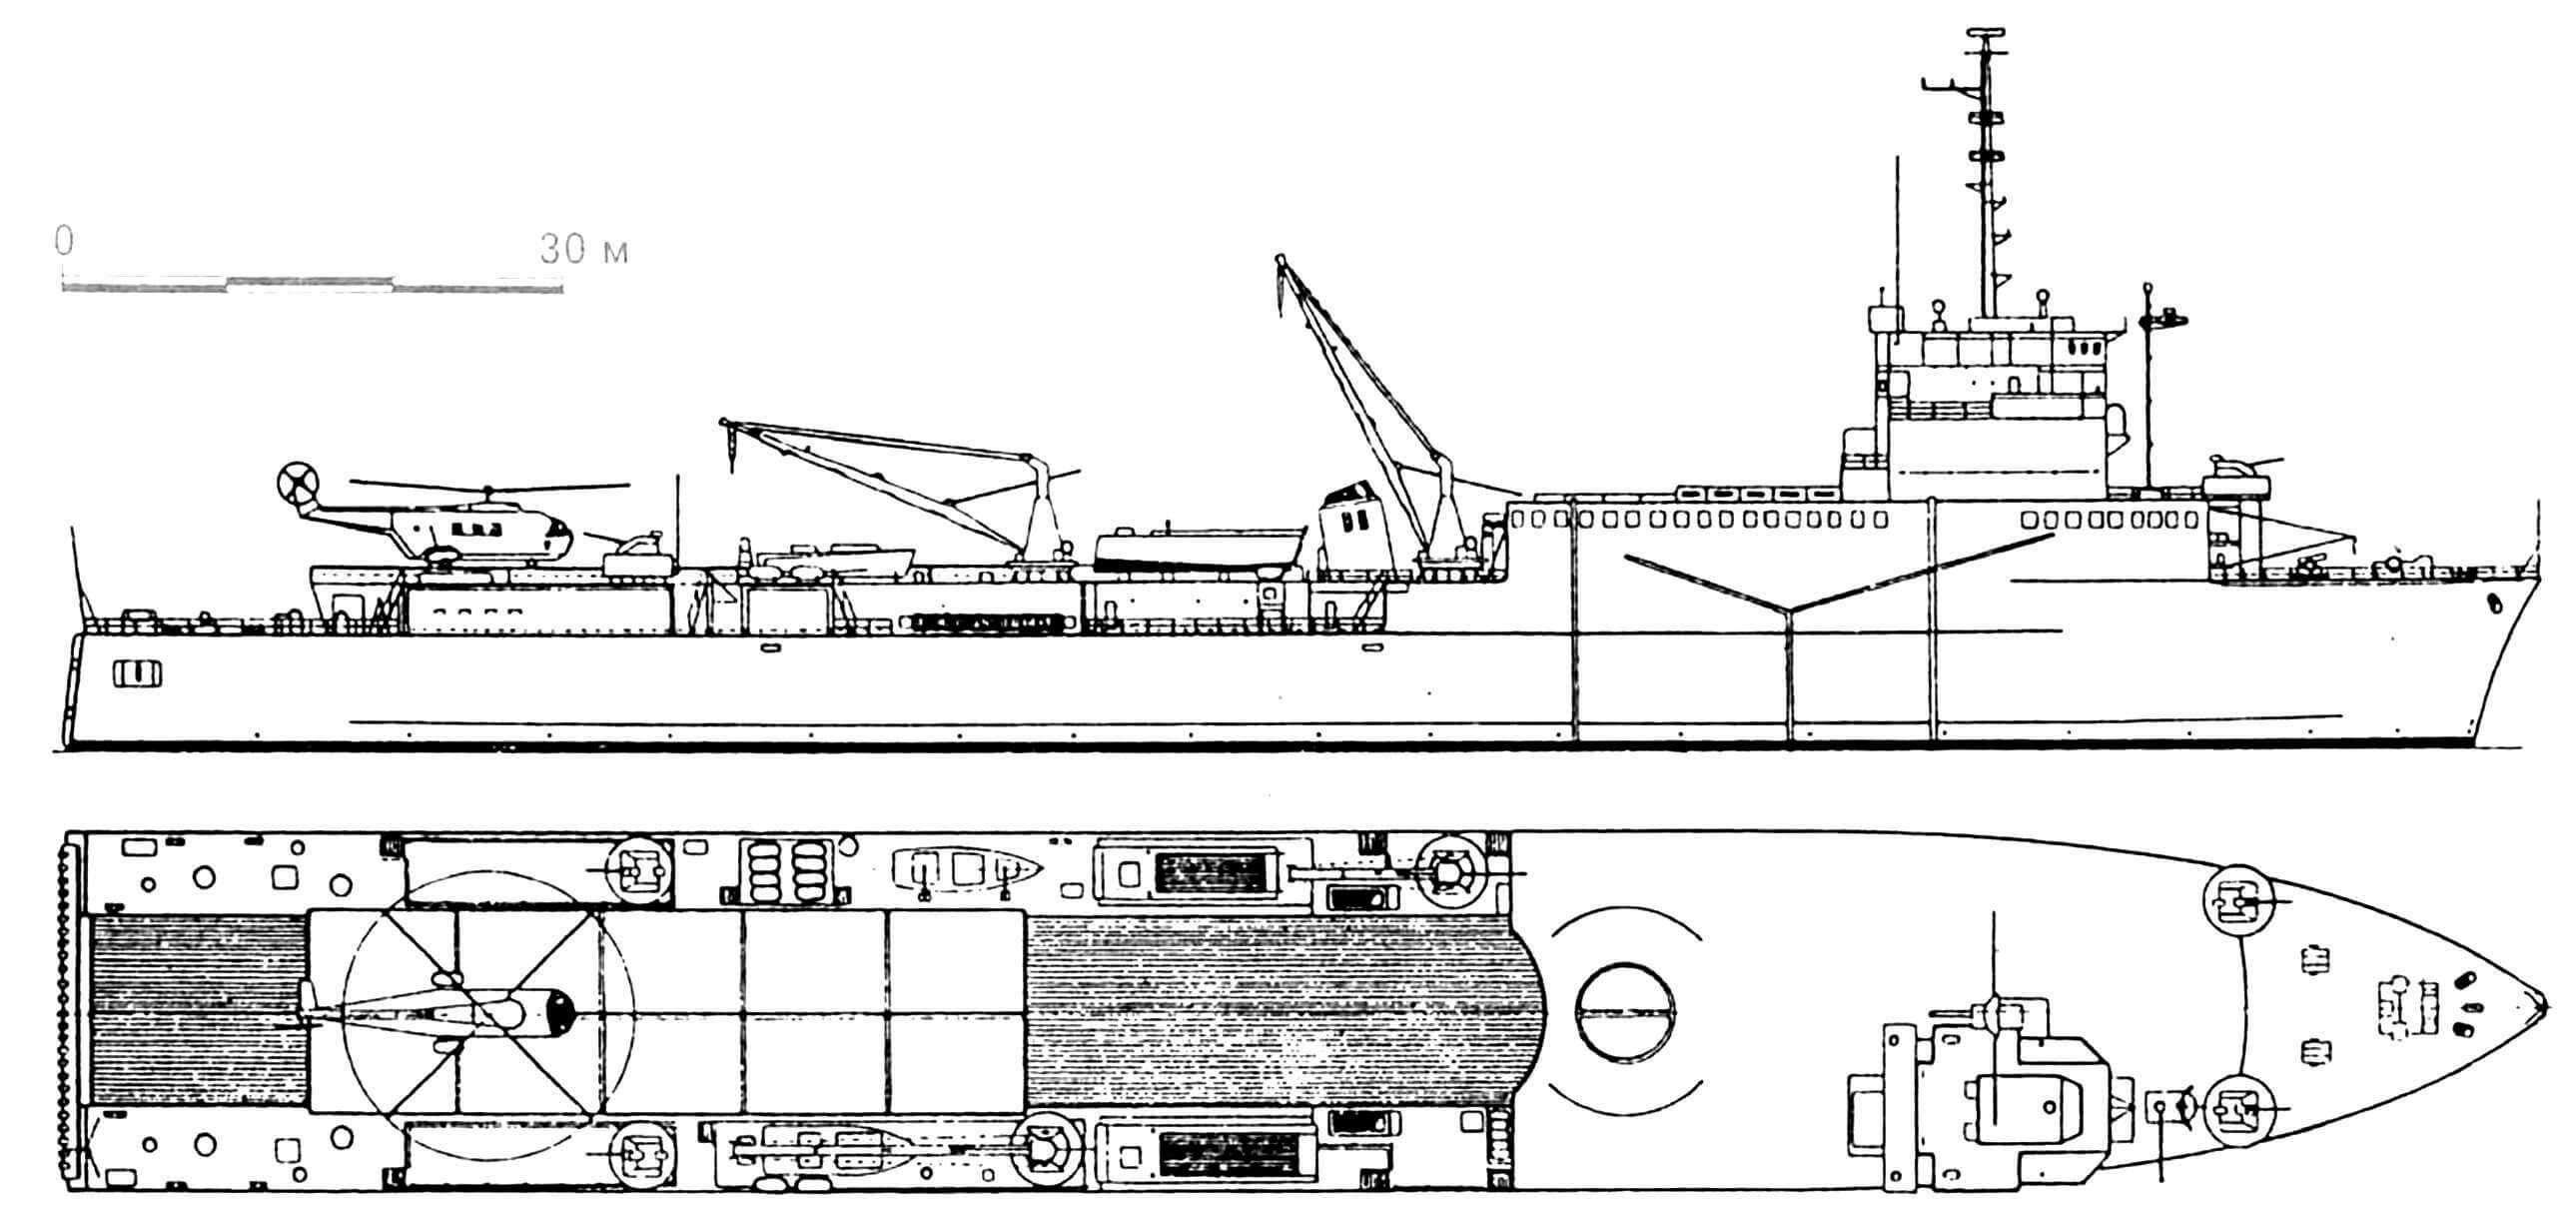 31. Десантный корабль-док «Ураган», Франция, 1963 г. Водоизмещение стандартное 5800 т, полное 8500 т. Длина 149,0 м, ширина 21,5м, осадка 4,6 м. Дизели общей мощностью 8600 л.с., скорость 17 узлов. Вооружение: четыре 40-мм автомата. Построены два корабля этого типа: «Ураган» (1963 г.) и «Ораж» (1967 г.)